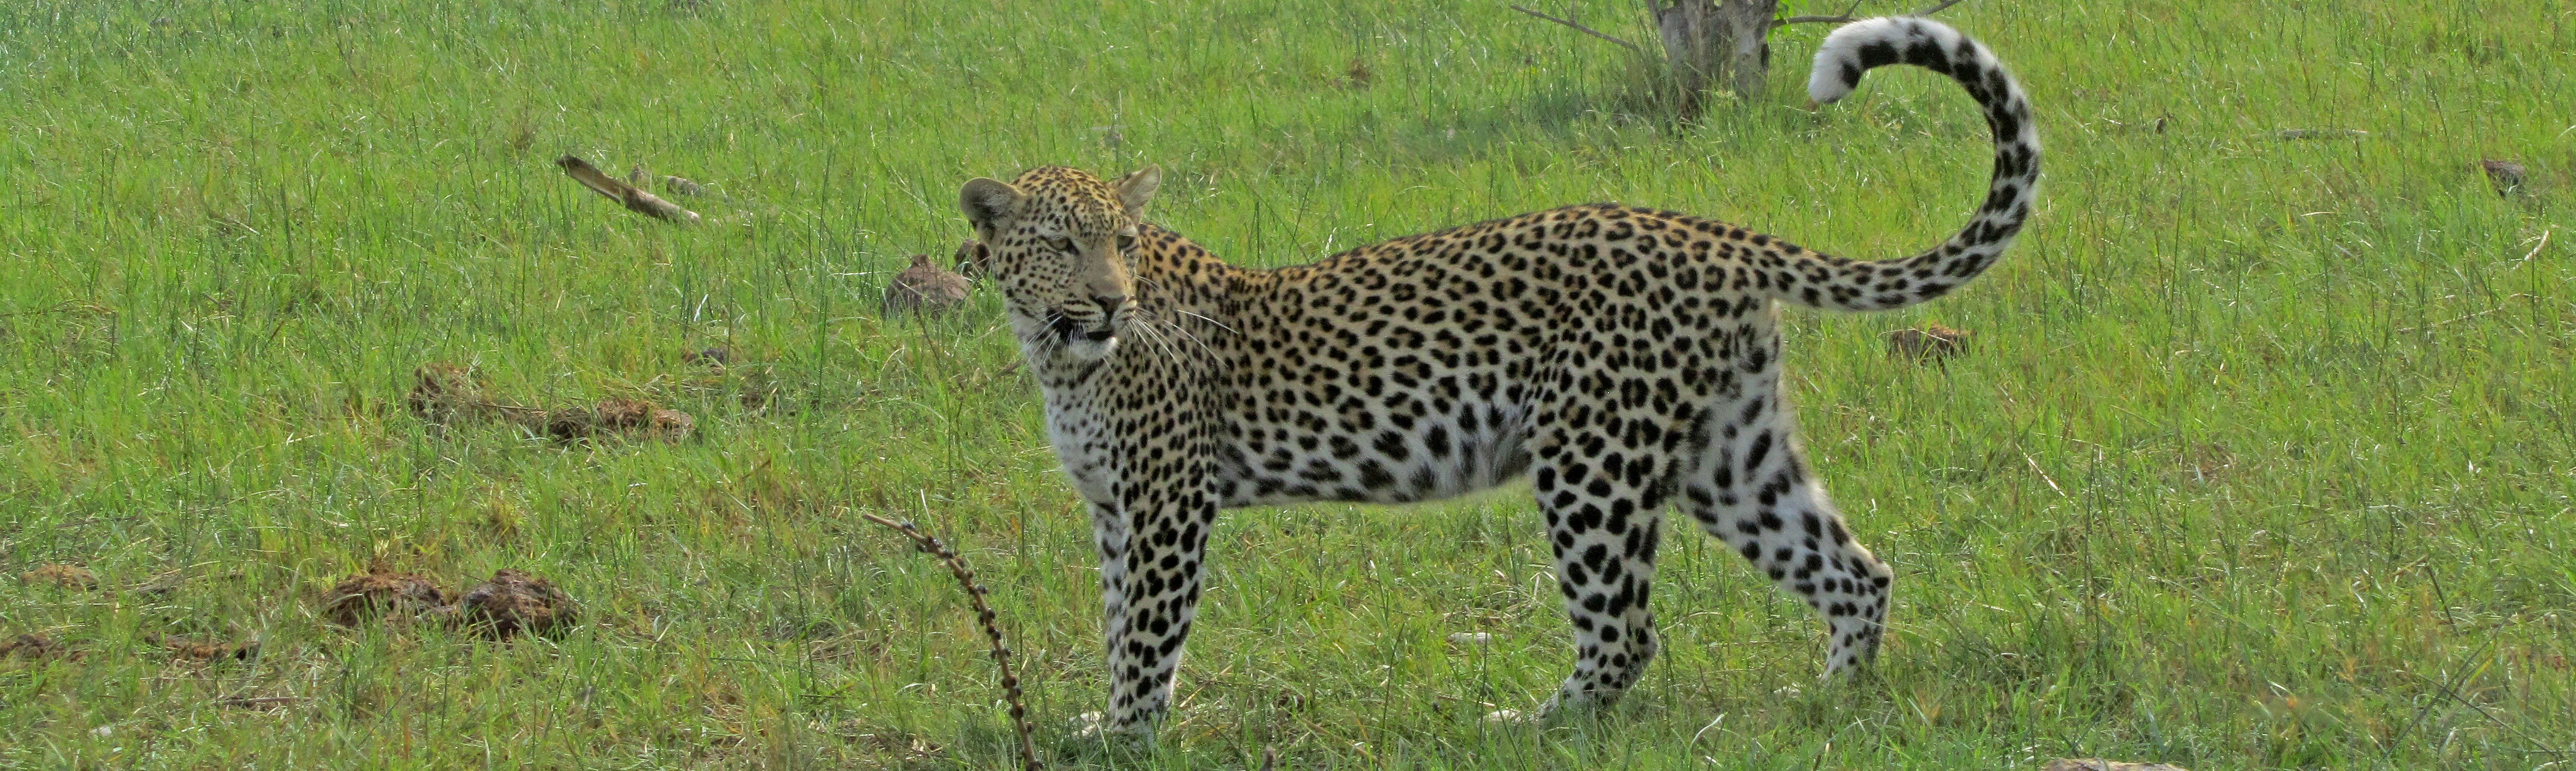 Leopard in Mashatu Game Reserve | Kalahari Skies